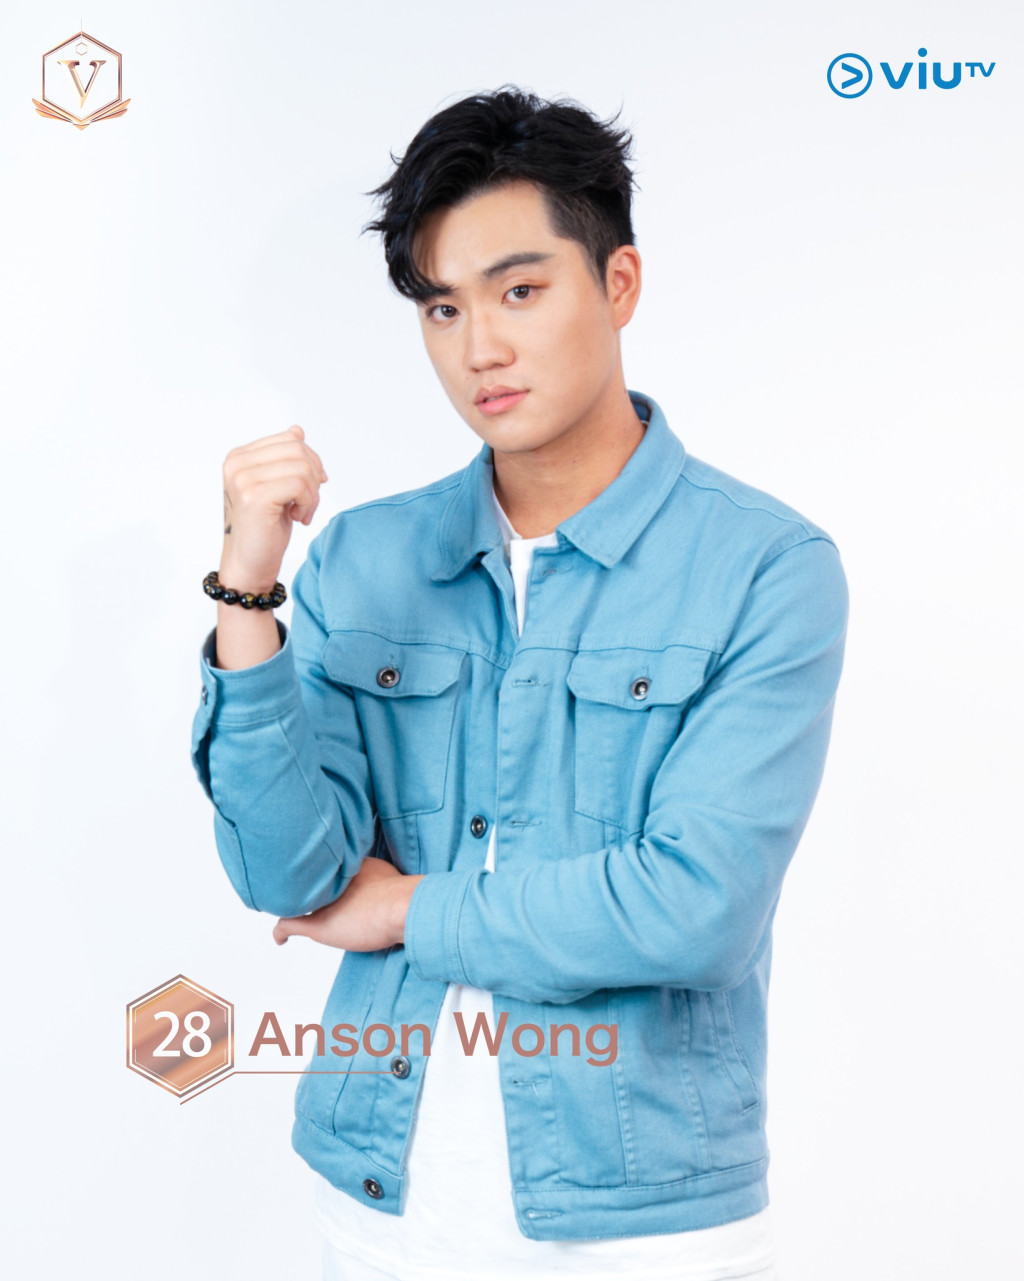 王俊文（Anson Wong） 年齡： 25 職業： 學生 擅長： 唱歌、彈結他、彈鋼琴 IG：ansonwcm